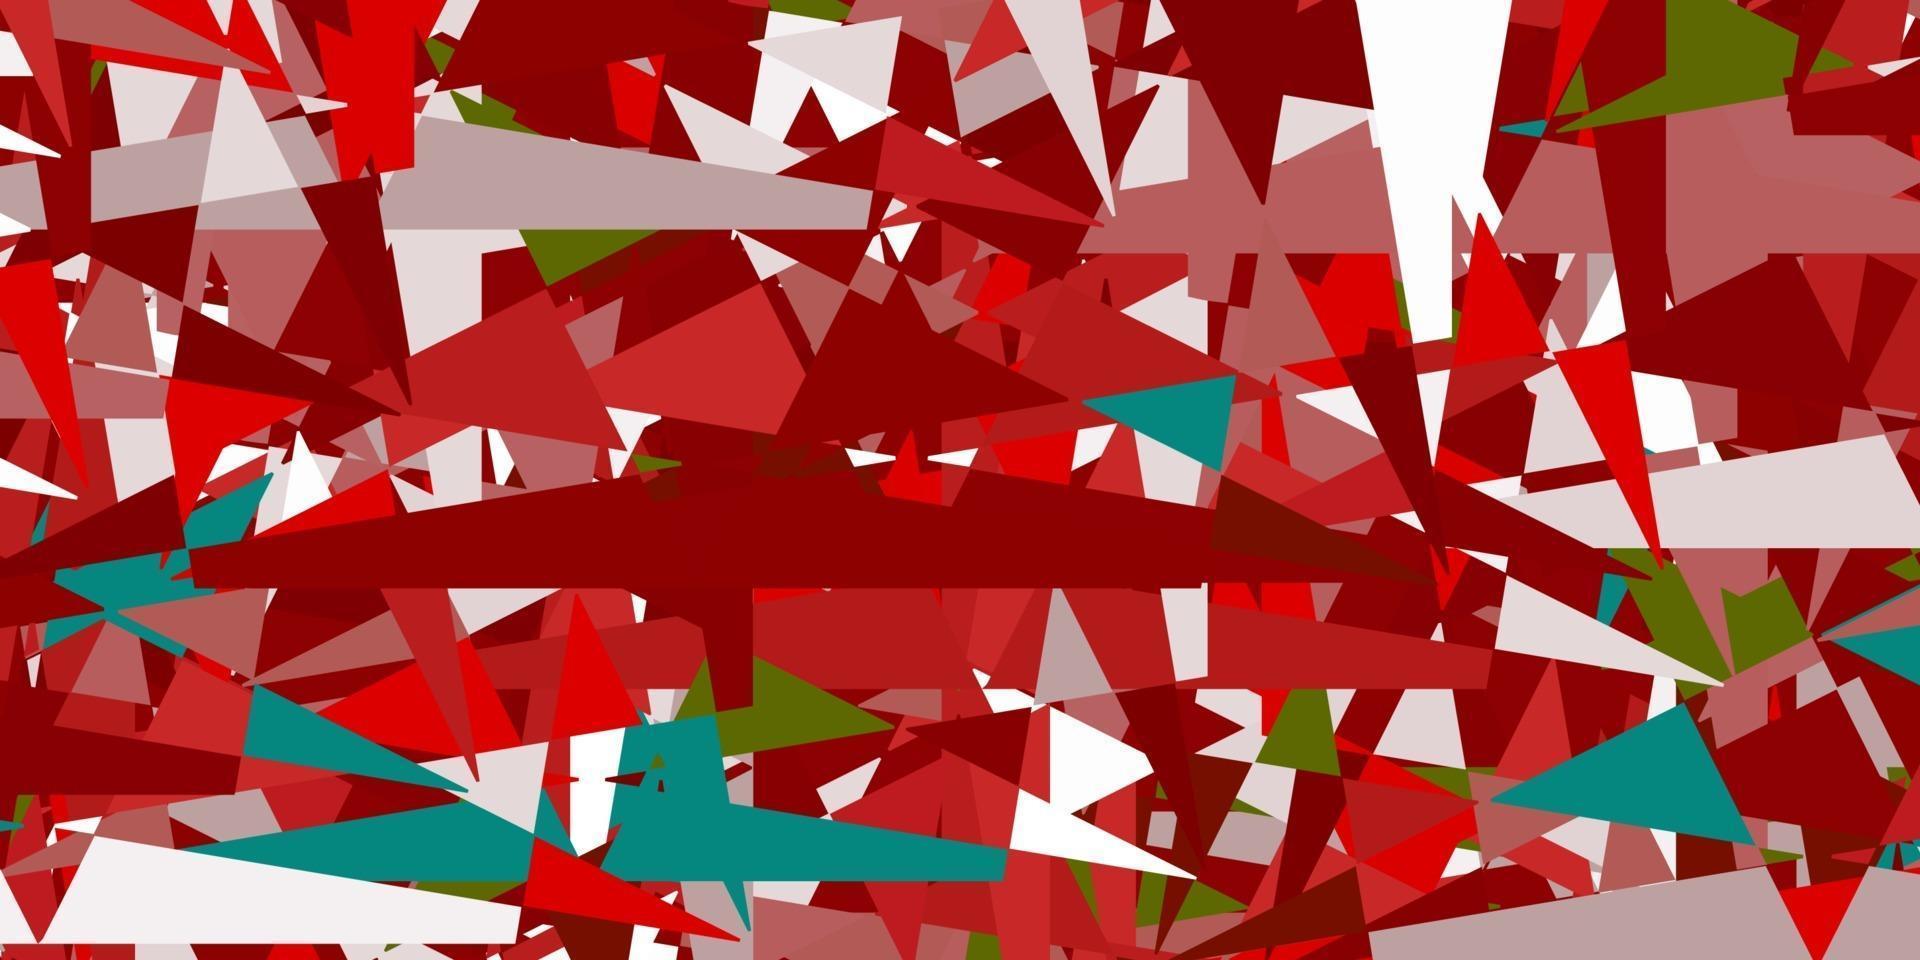 ljusgrön, röd vektorlayout med linjer, trianglar. vektor